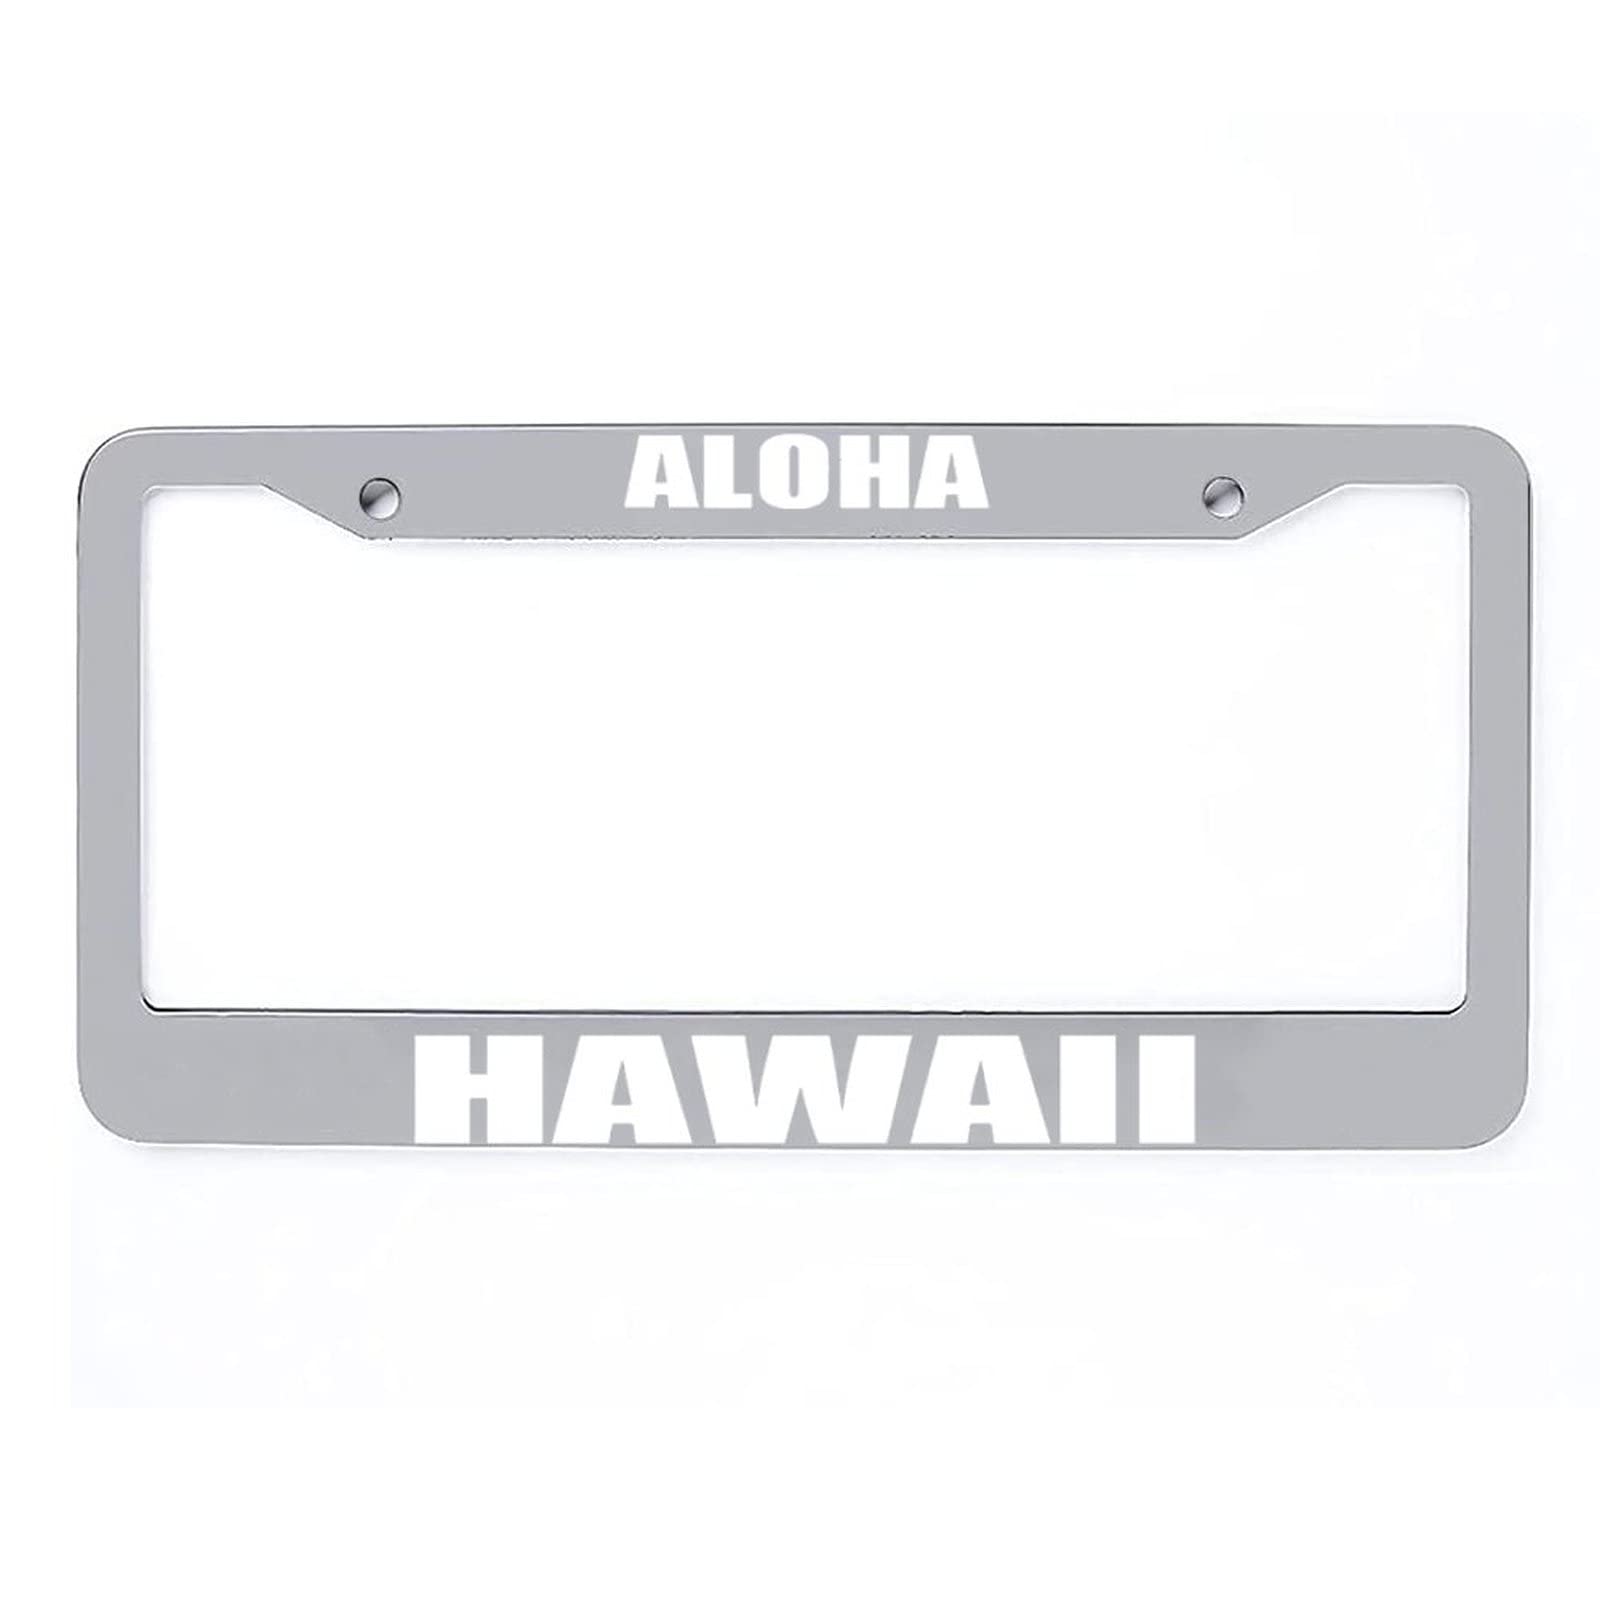 Aloha Hawaii Metall-Kennzeichenrahmen Auto Auto Tag Halter - 2 Löcher Kennzeichenabdeckungen Halter Rahmen von Funlucy